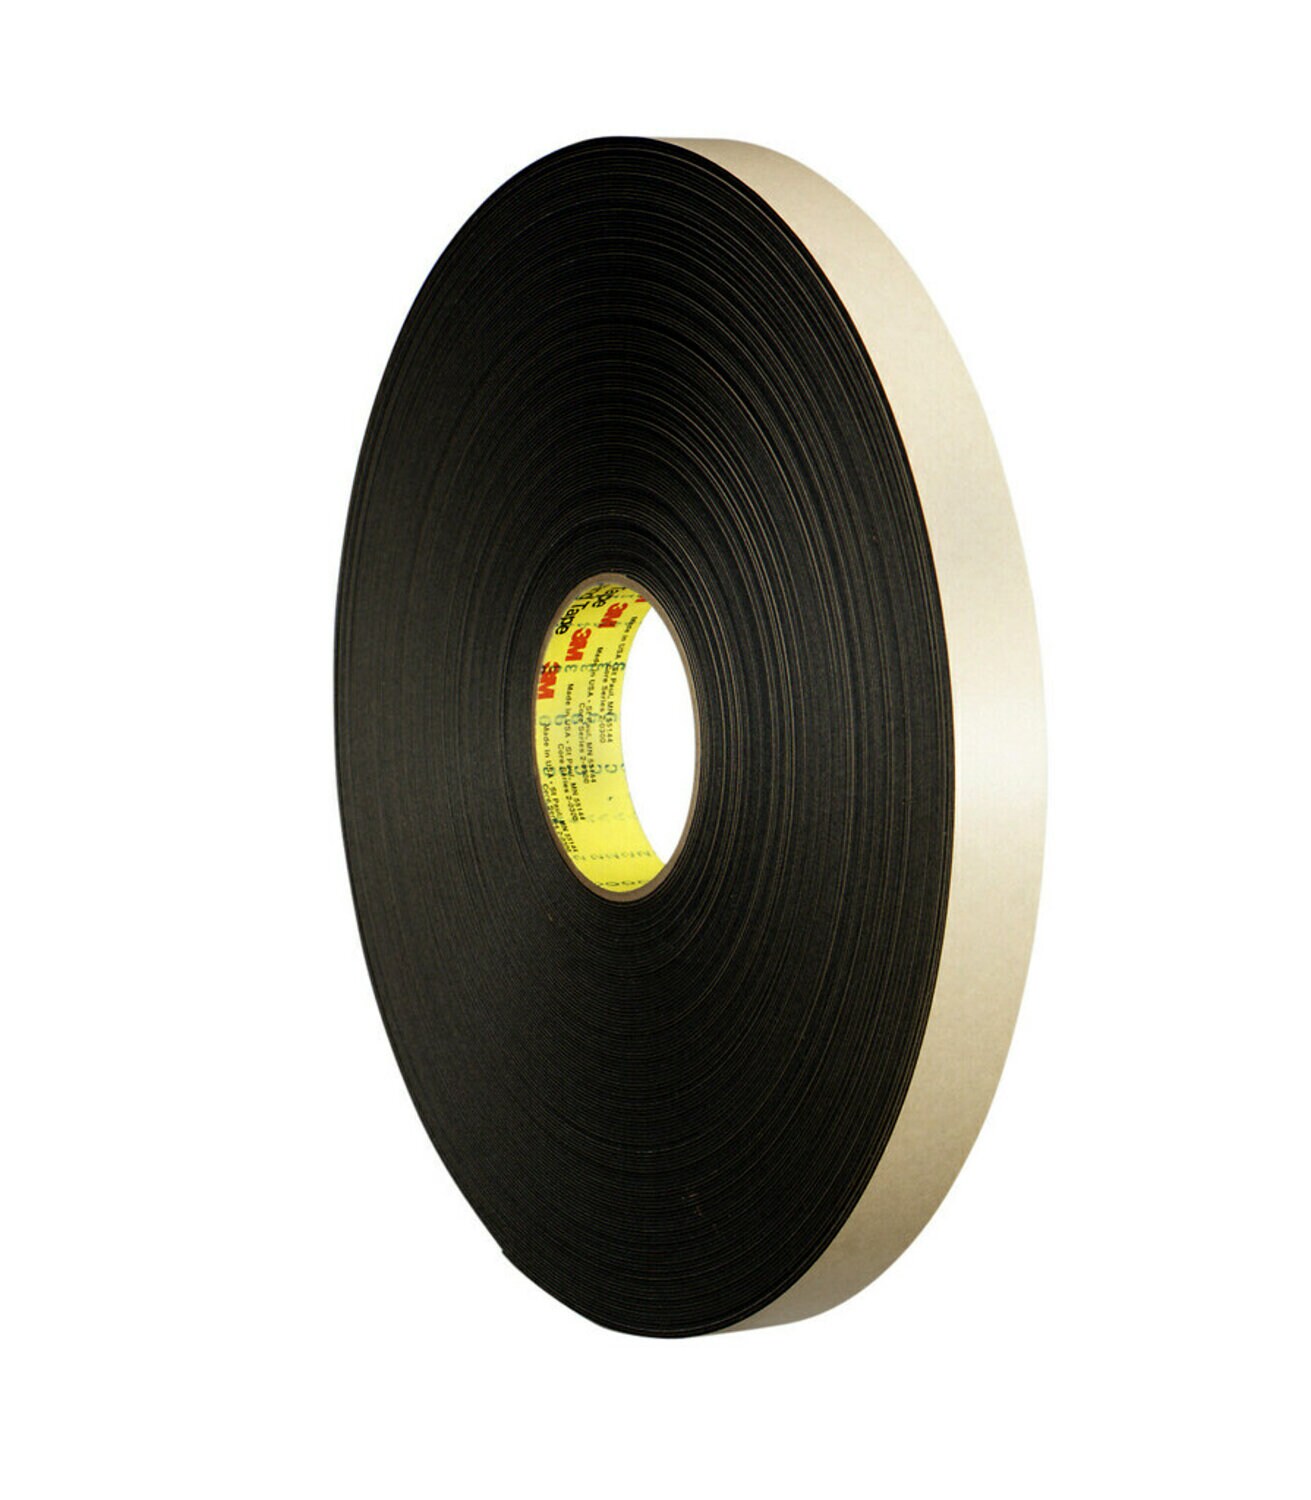 7010373747 - 3M Double Coated Polyethylene Foam Tape 4492B, Black, 3/8 in x 72 yd,
31 mil, 24 rolls per case